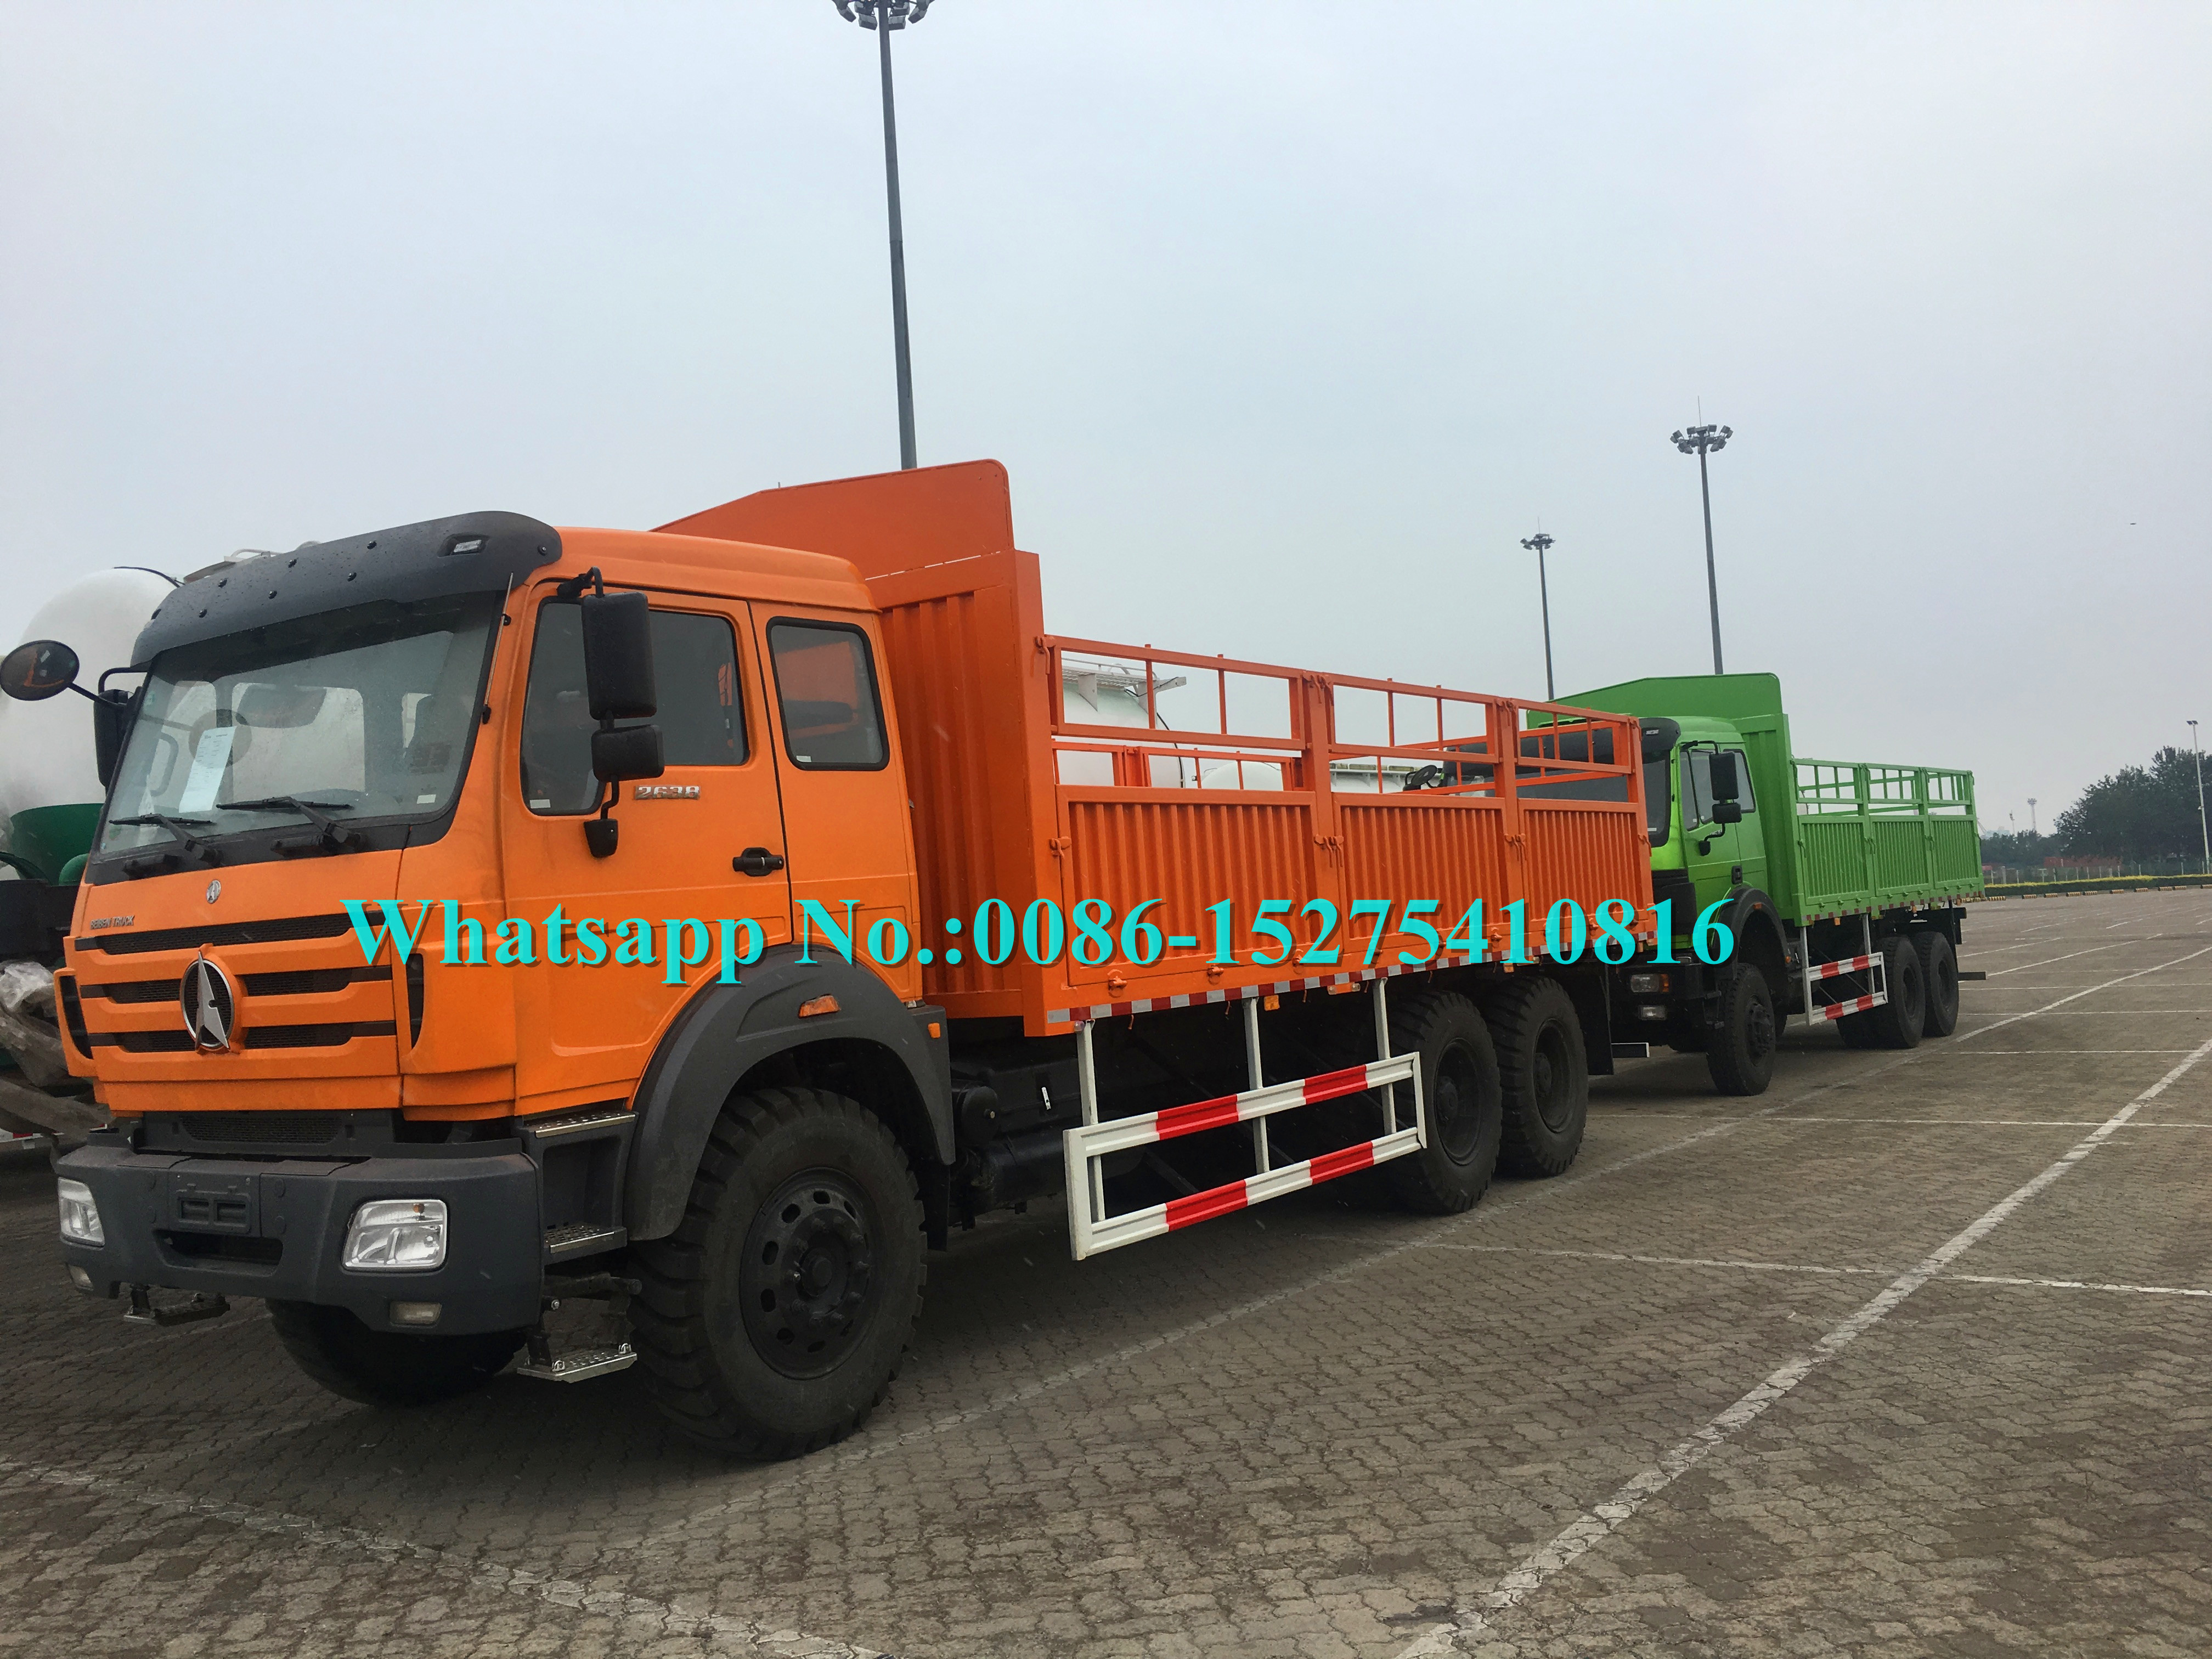 Camion lourd de cargaison de l'orange 2642 420hp 6x6 avec le pneu RAPIDE de la boîte de vitesse 12.00R24